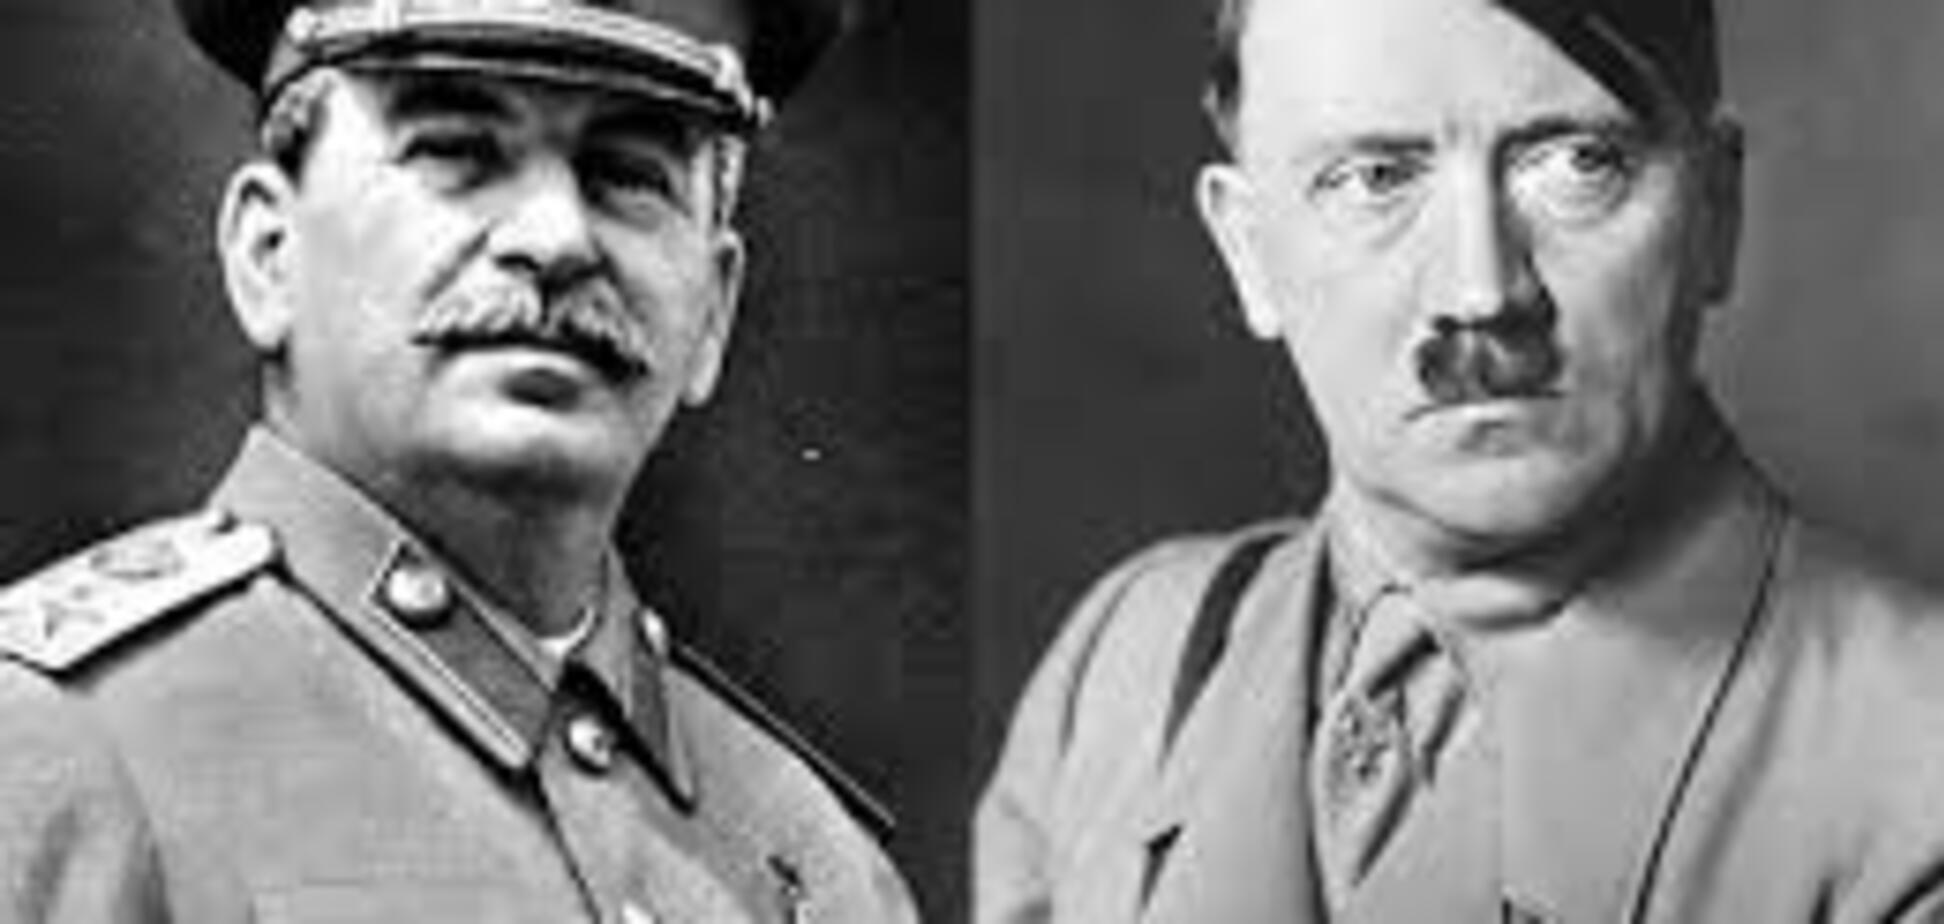 Сталин делал все правильно, а вот Гитлер оказался идиотом